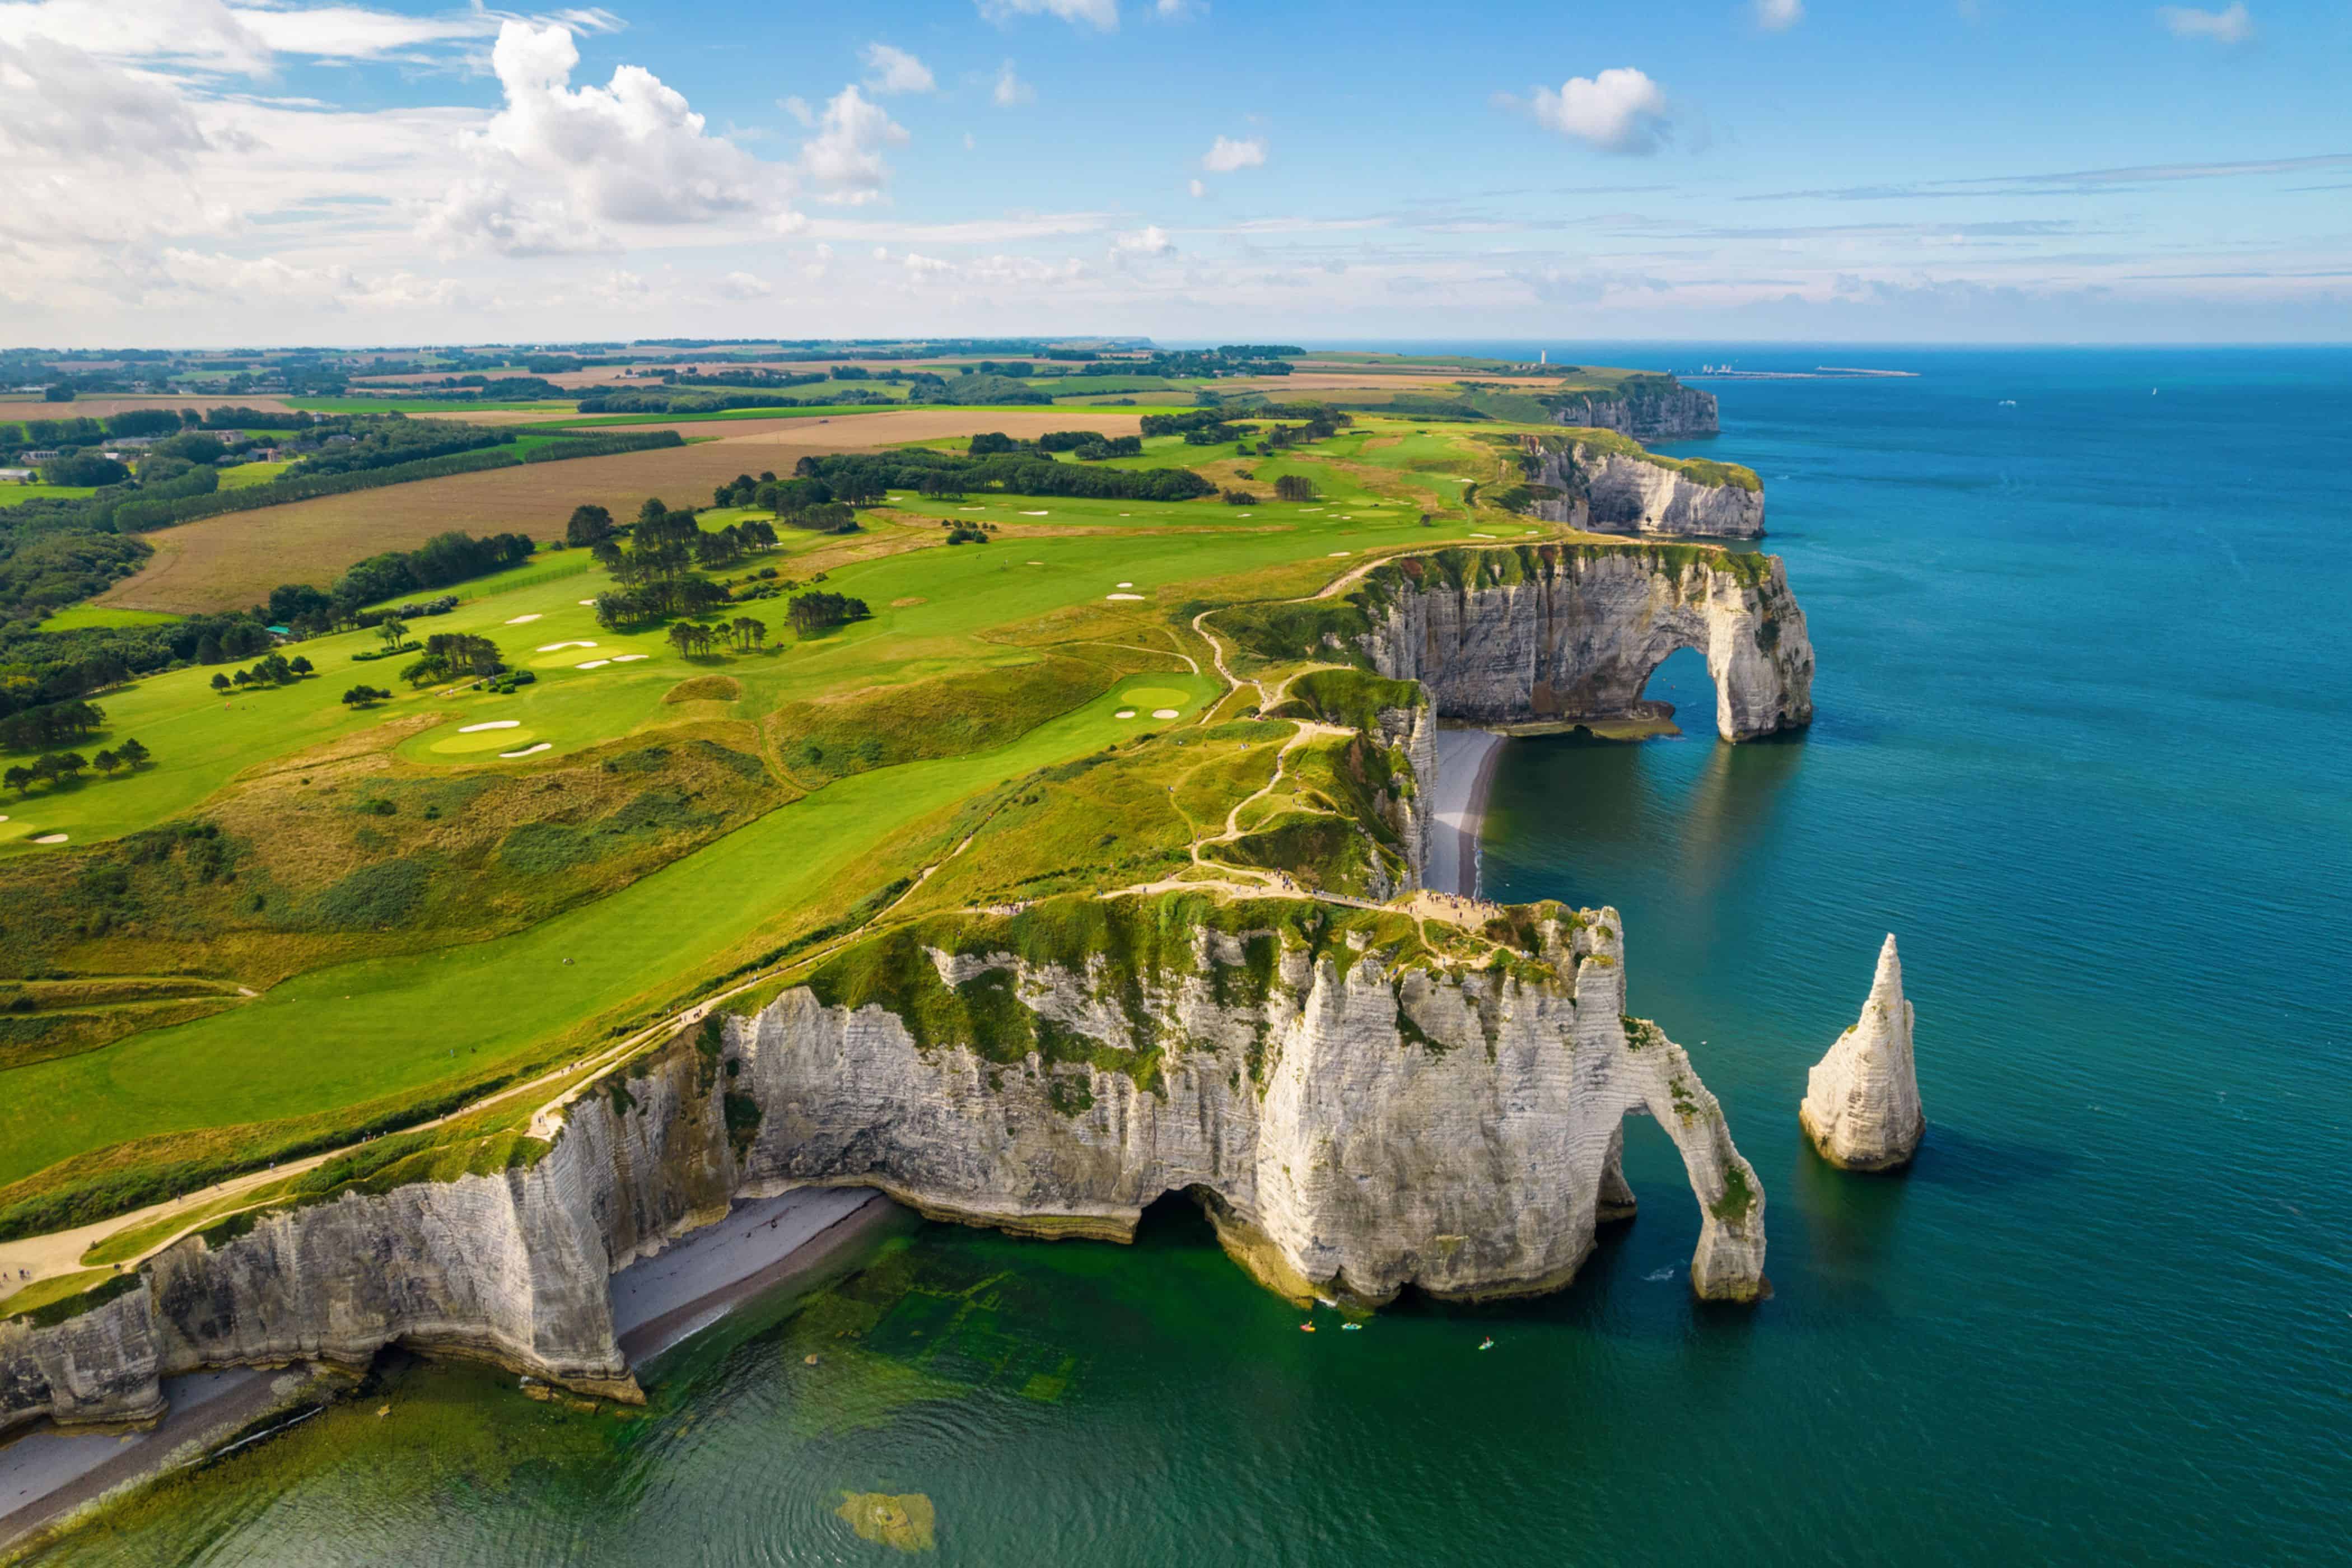 Etretat Cliffs Normandy France - Magnificent Arches!